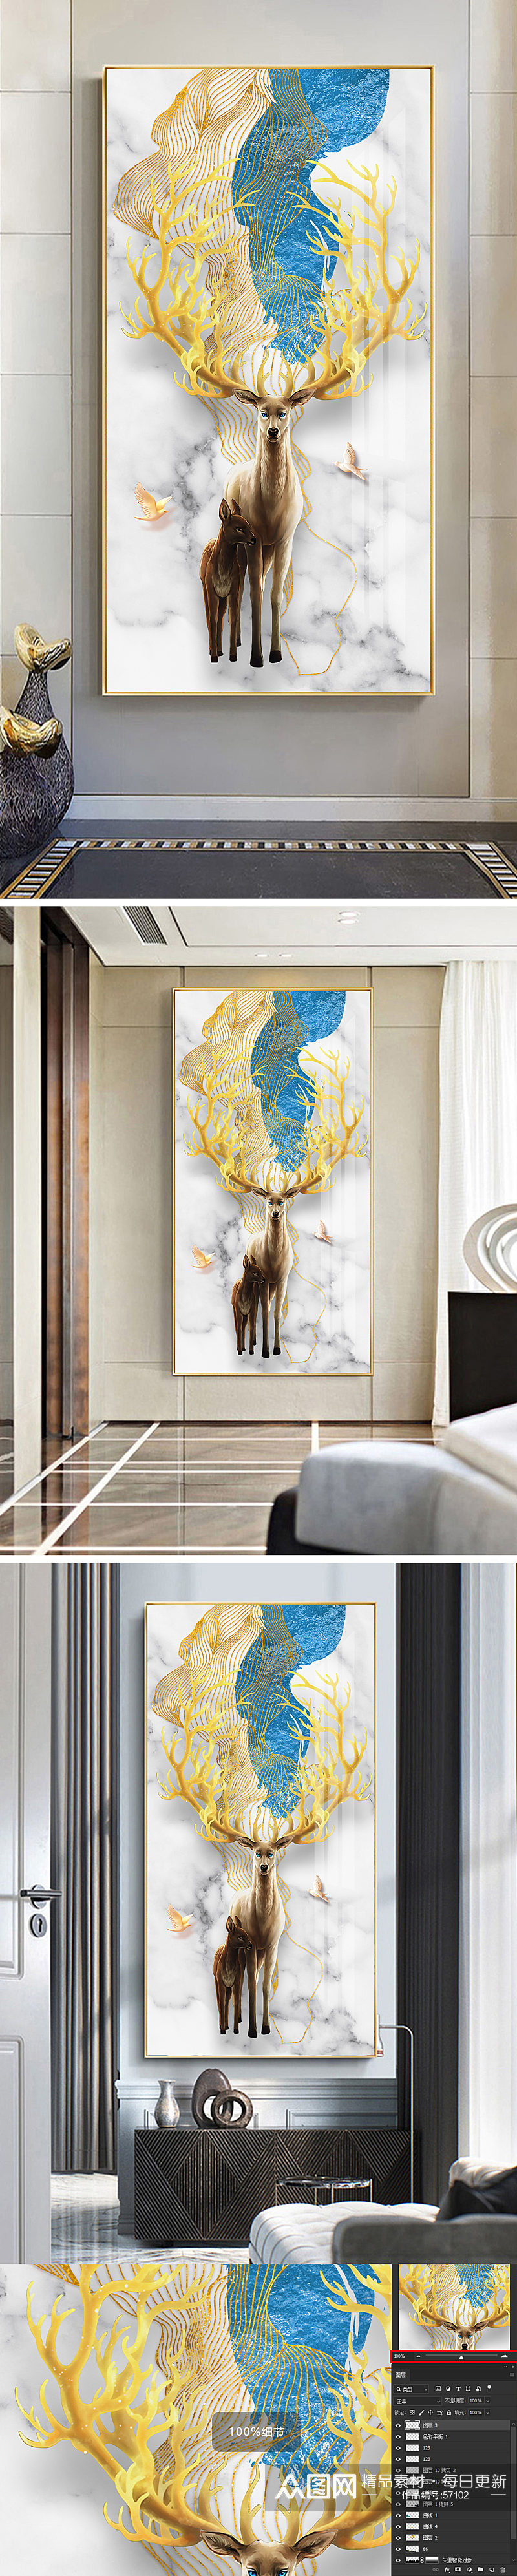 新中式金箔抽象麋鹿装饰画素材